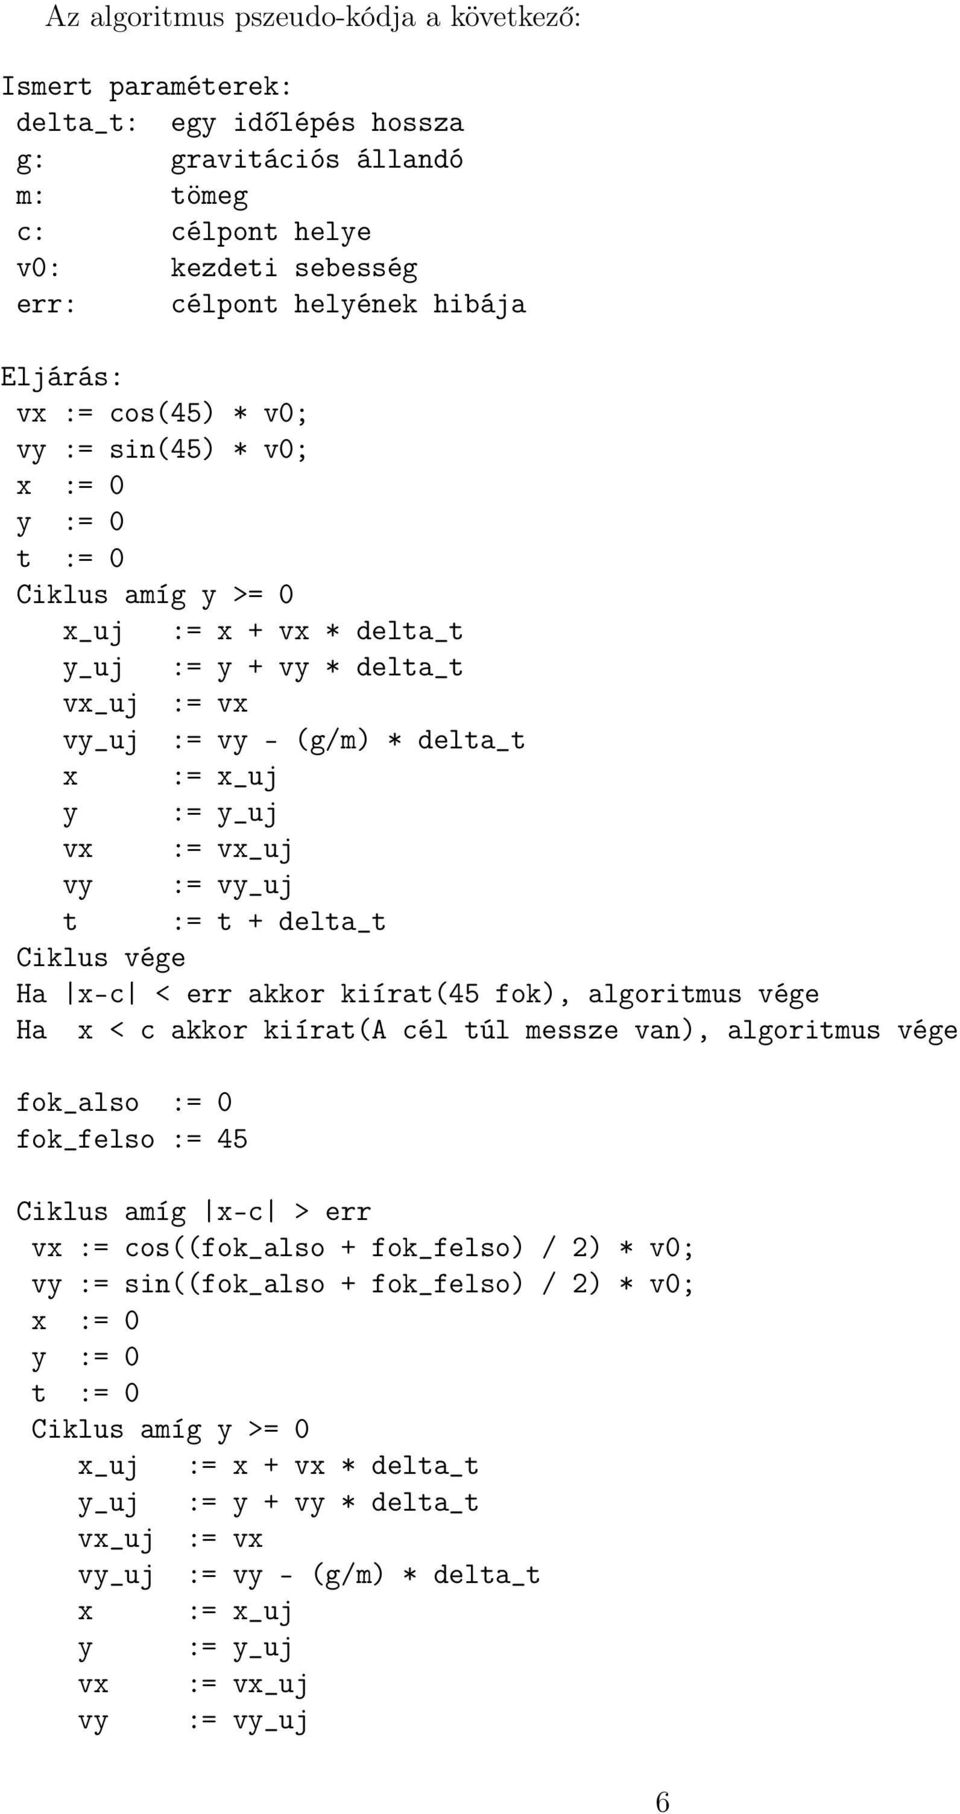 vx_uj vy := vy_uj t := t + delta_t Ha x-c < err akkor kiírat(45 fok), algoritmus vége Ha x < c akkor kiírat(a cél túl messze van), algoritmus vége fok_also := 0 fok_felso := 45 Ciklus amíg x-c > err